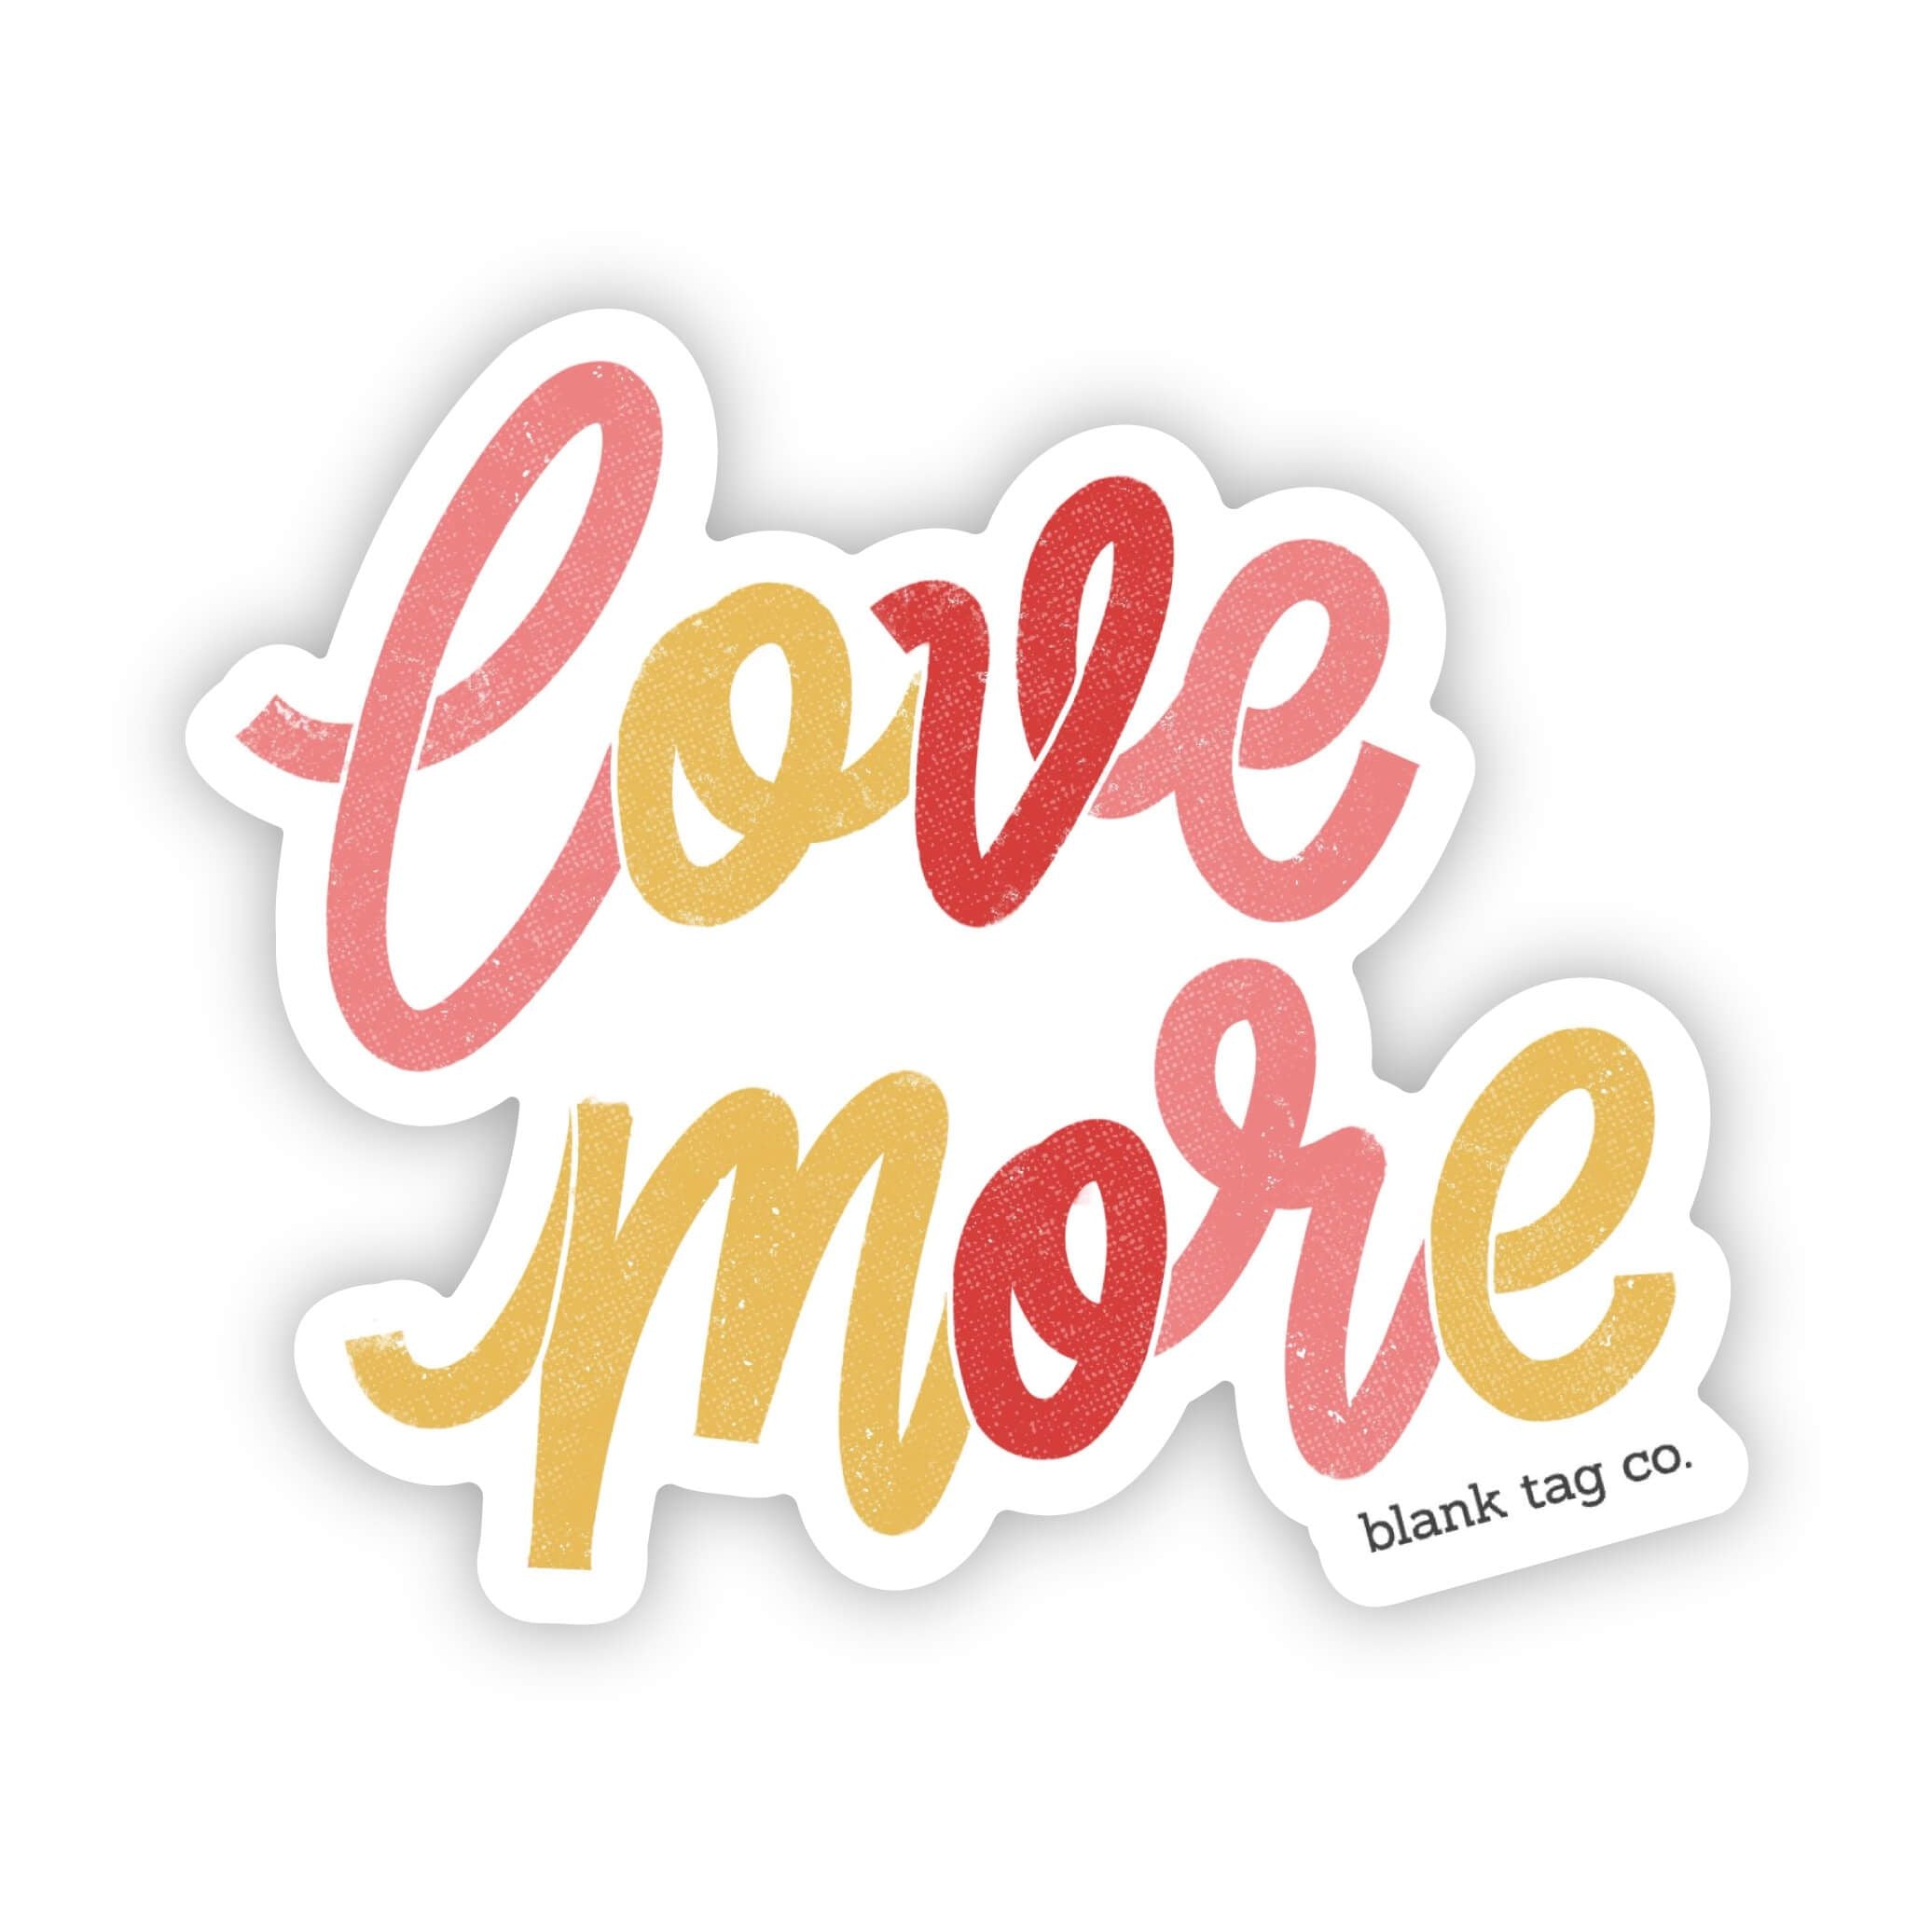 The Love More Sticker